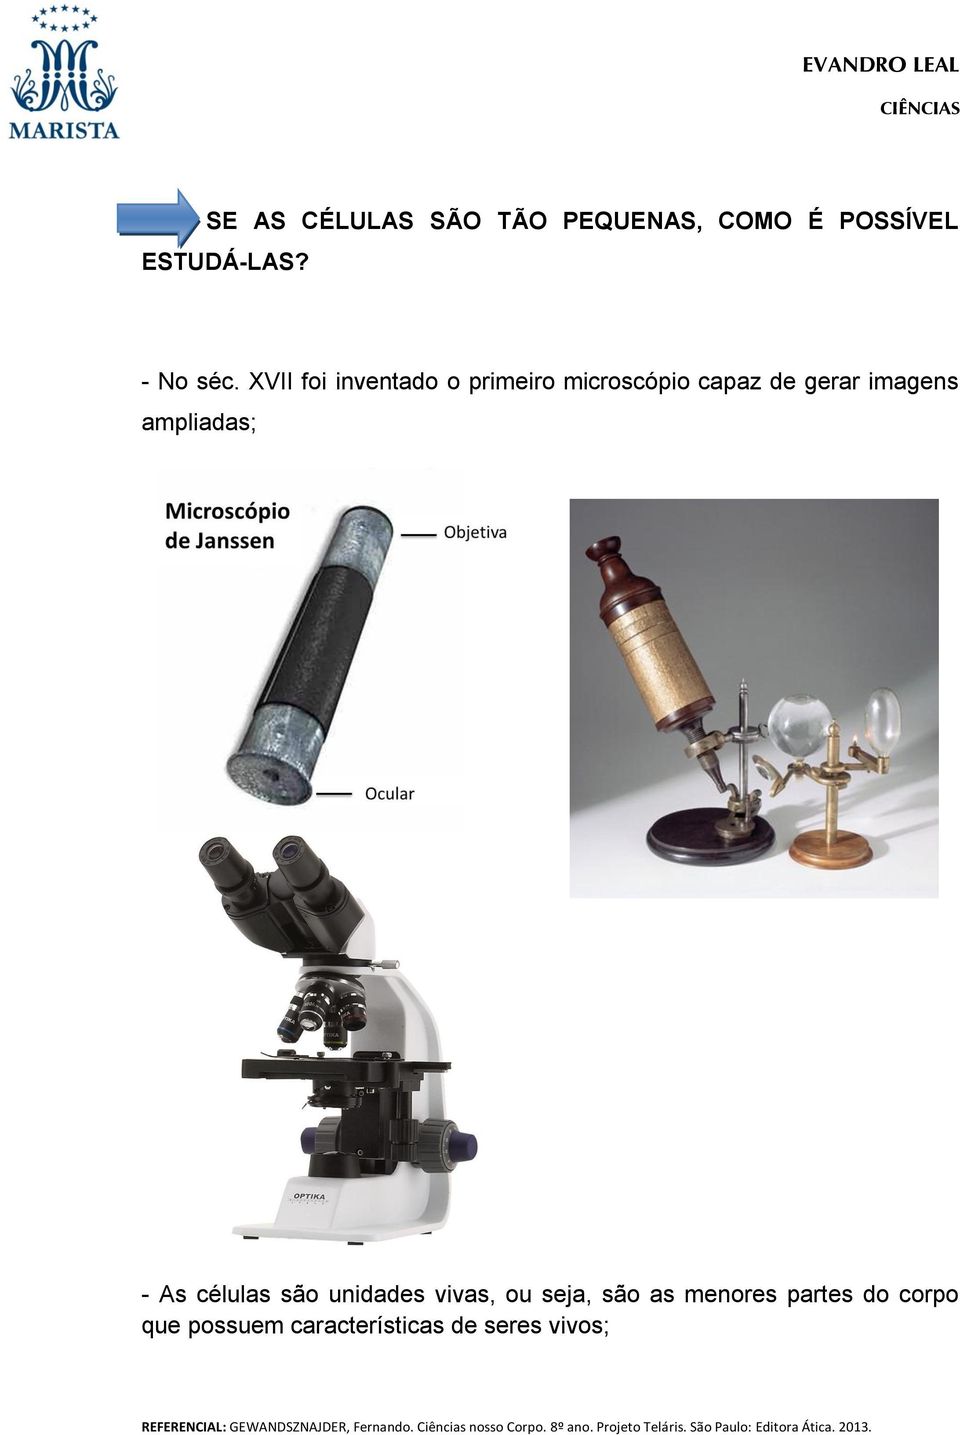 XVII foi inventado o primeiro microscópio capaz de gerar imagens